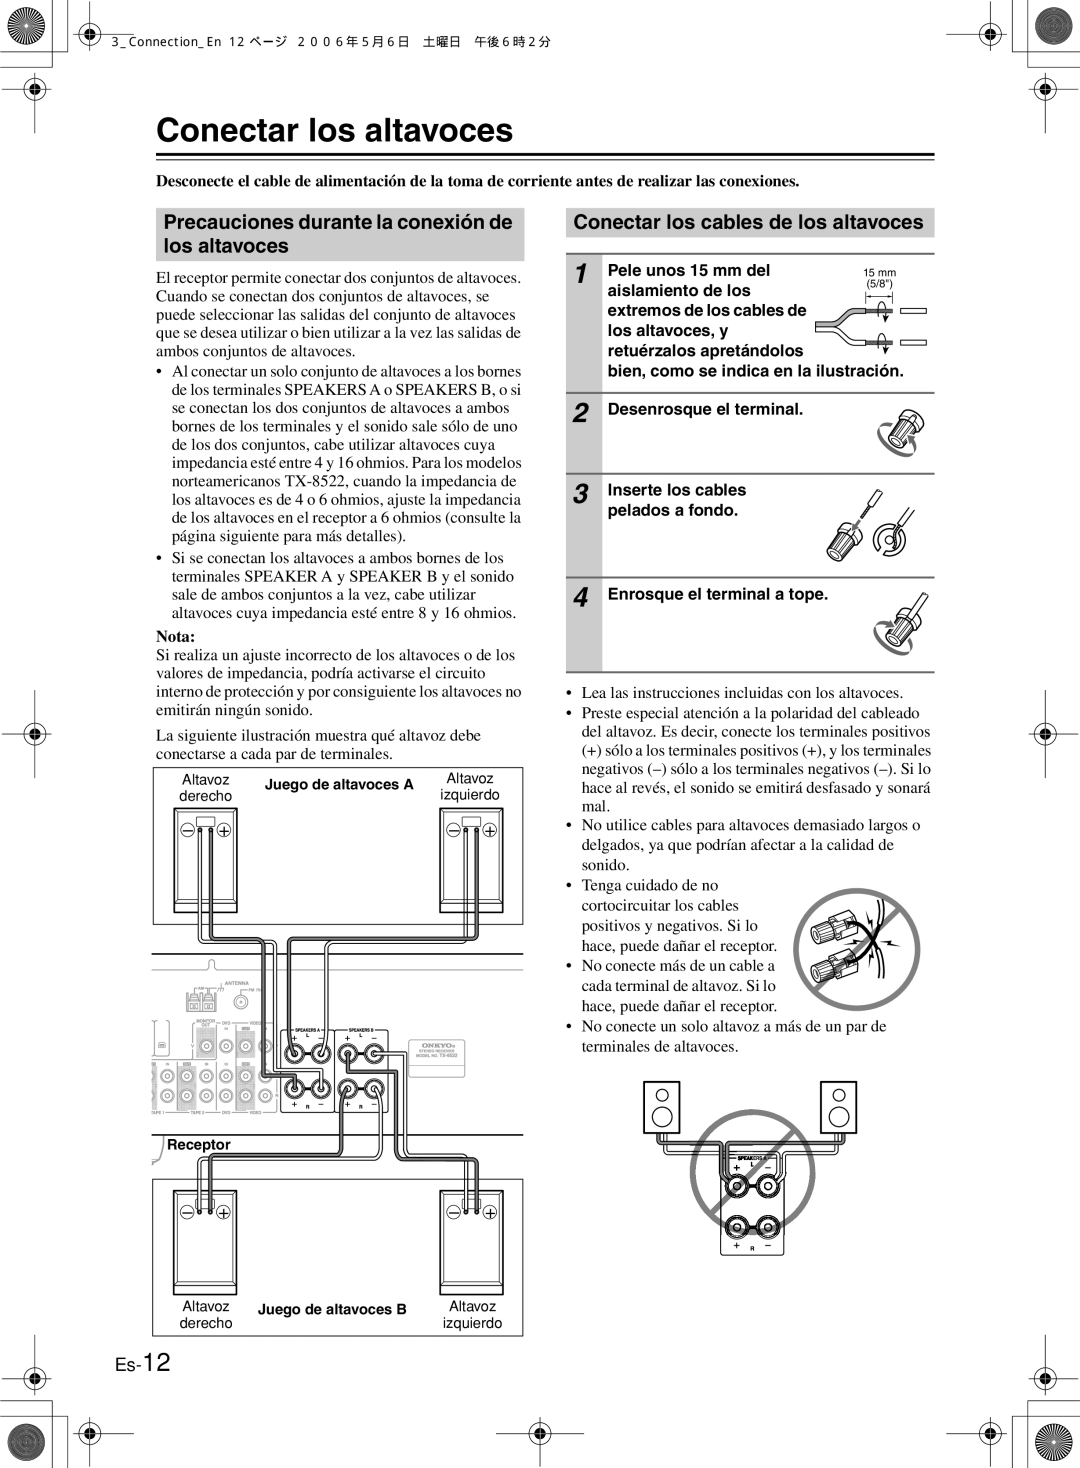 Onkyo TX-8222, TX-8522 manual Conectar los altavoces, Precauciones durante la conexión de los altavoces, Es-12, Nota 